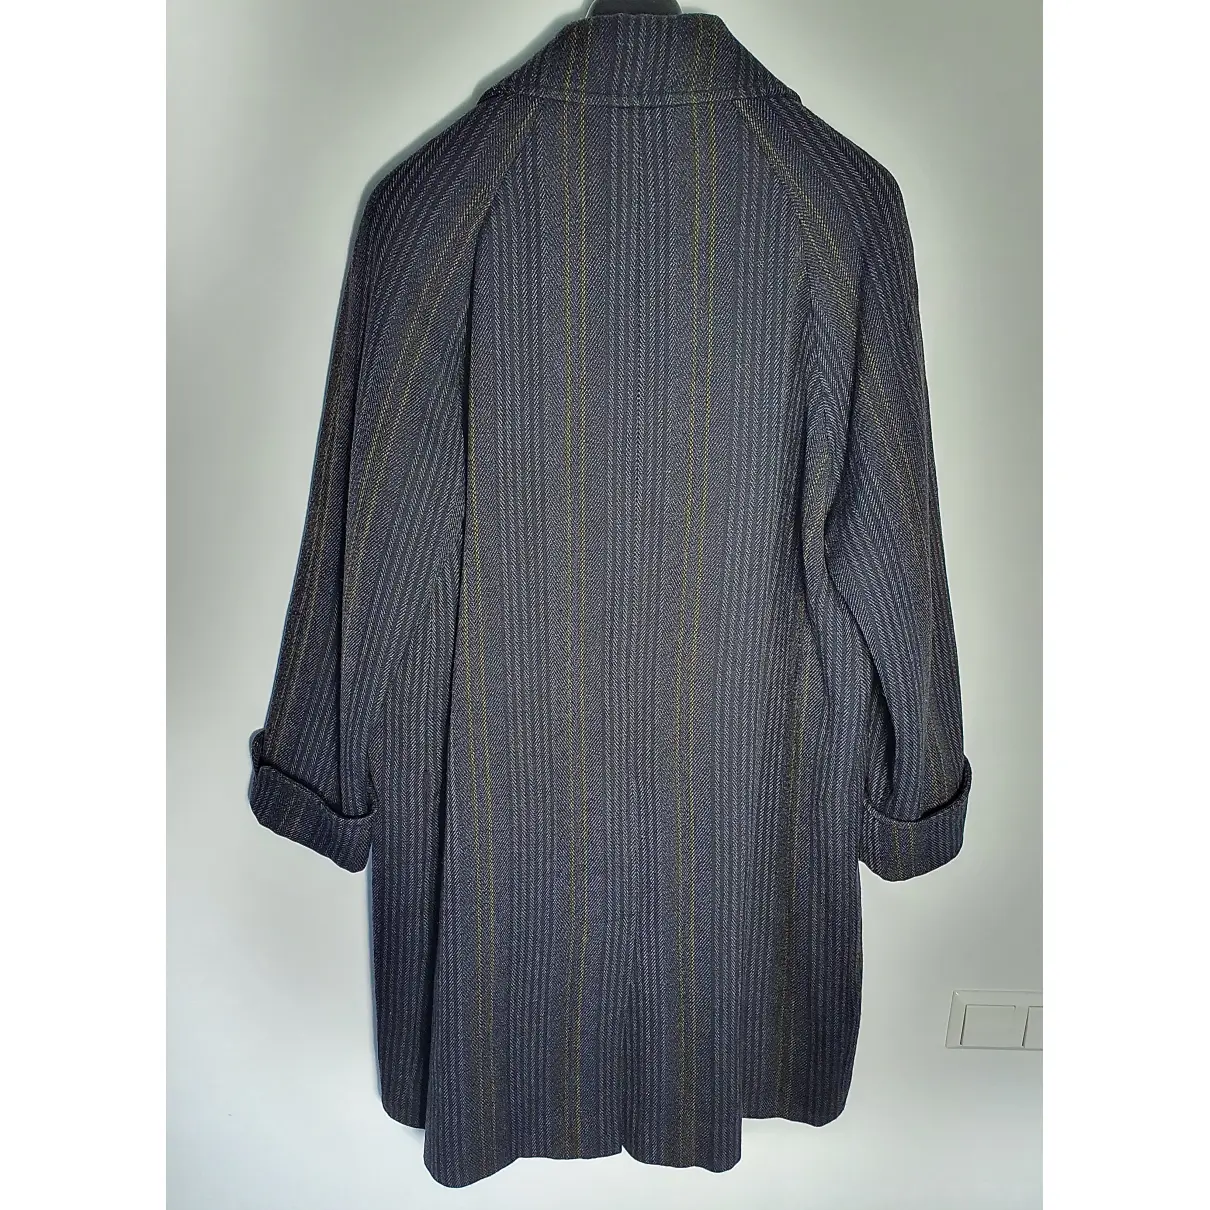 Buy Callaghan Wool coat online - Vintage